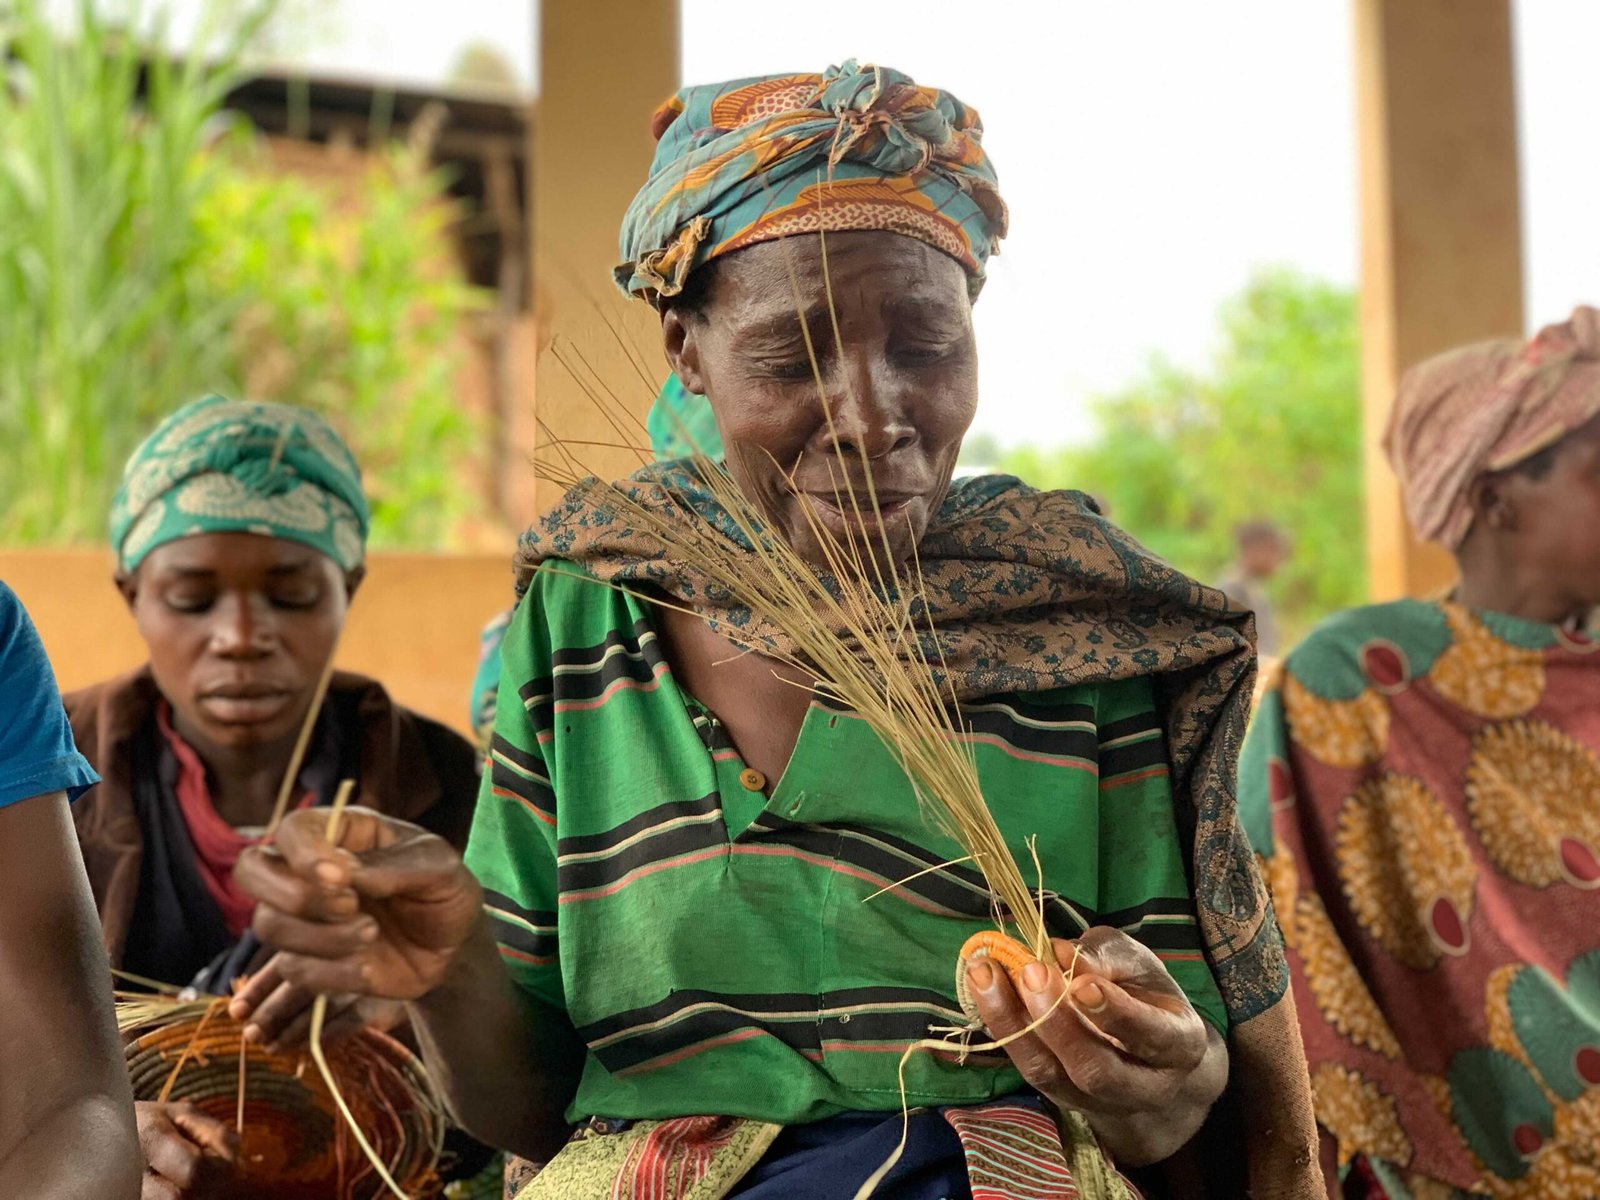 Livera, a Bwindi artist who does basket weaving.